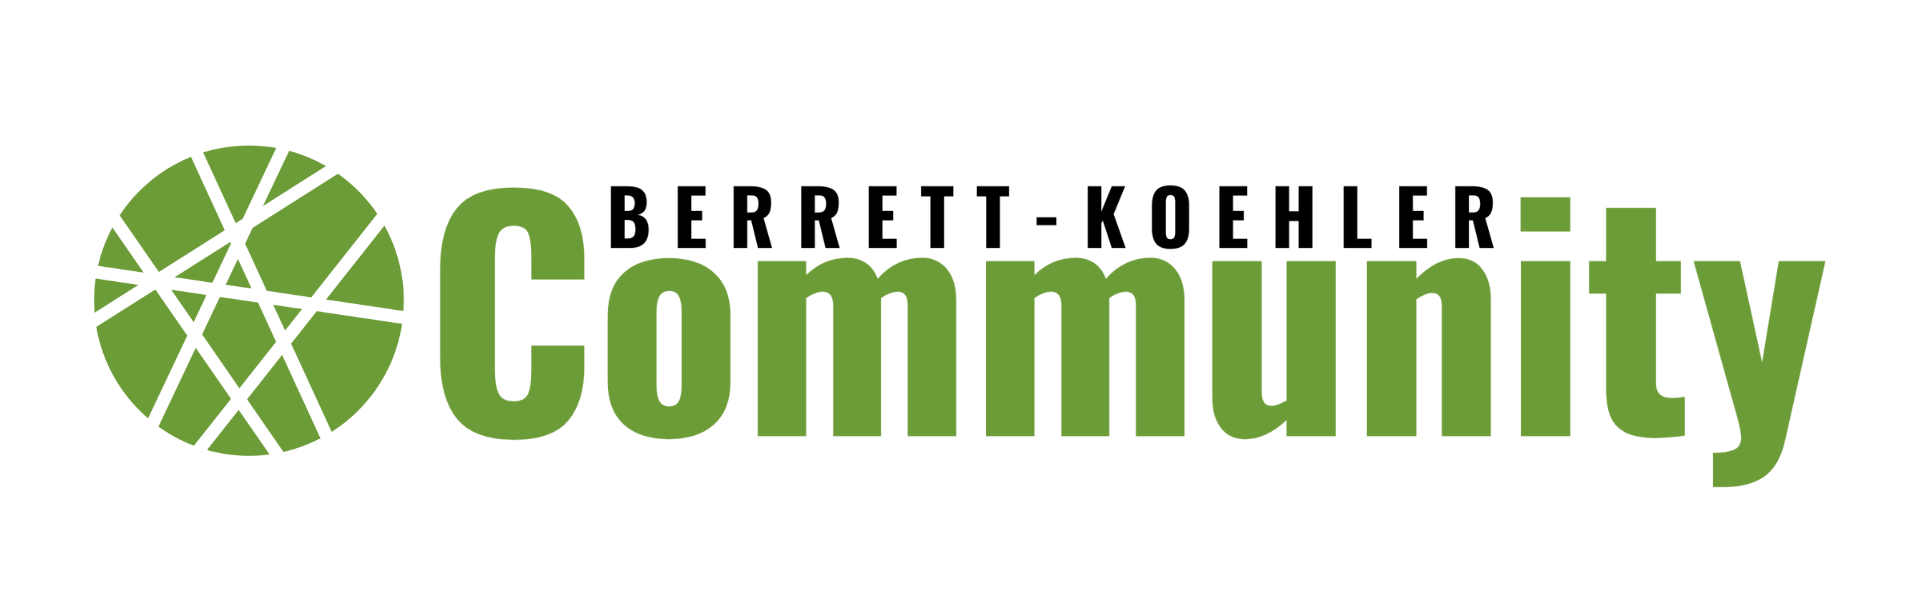 BK Community Logo (4)